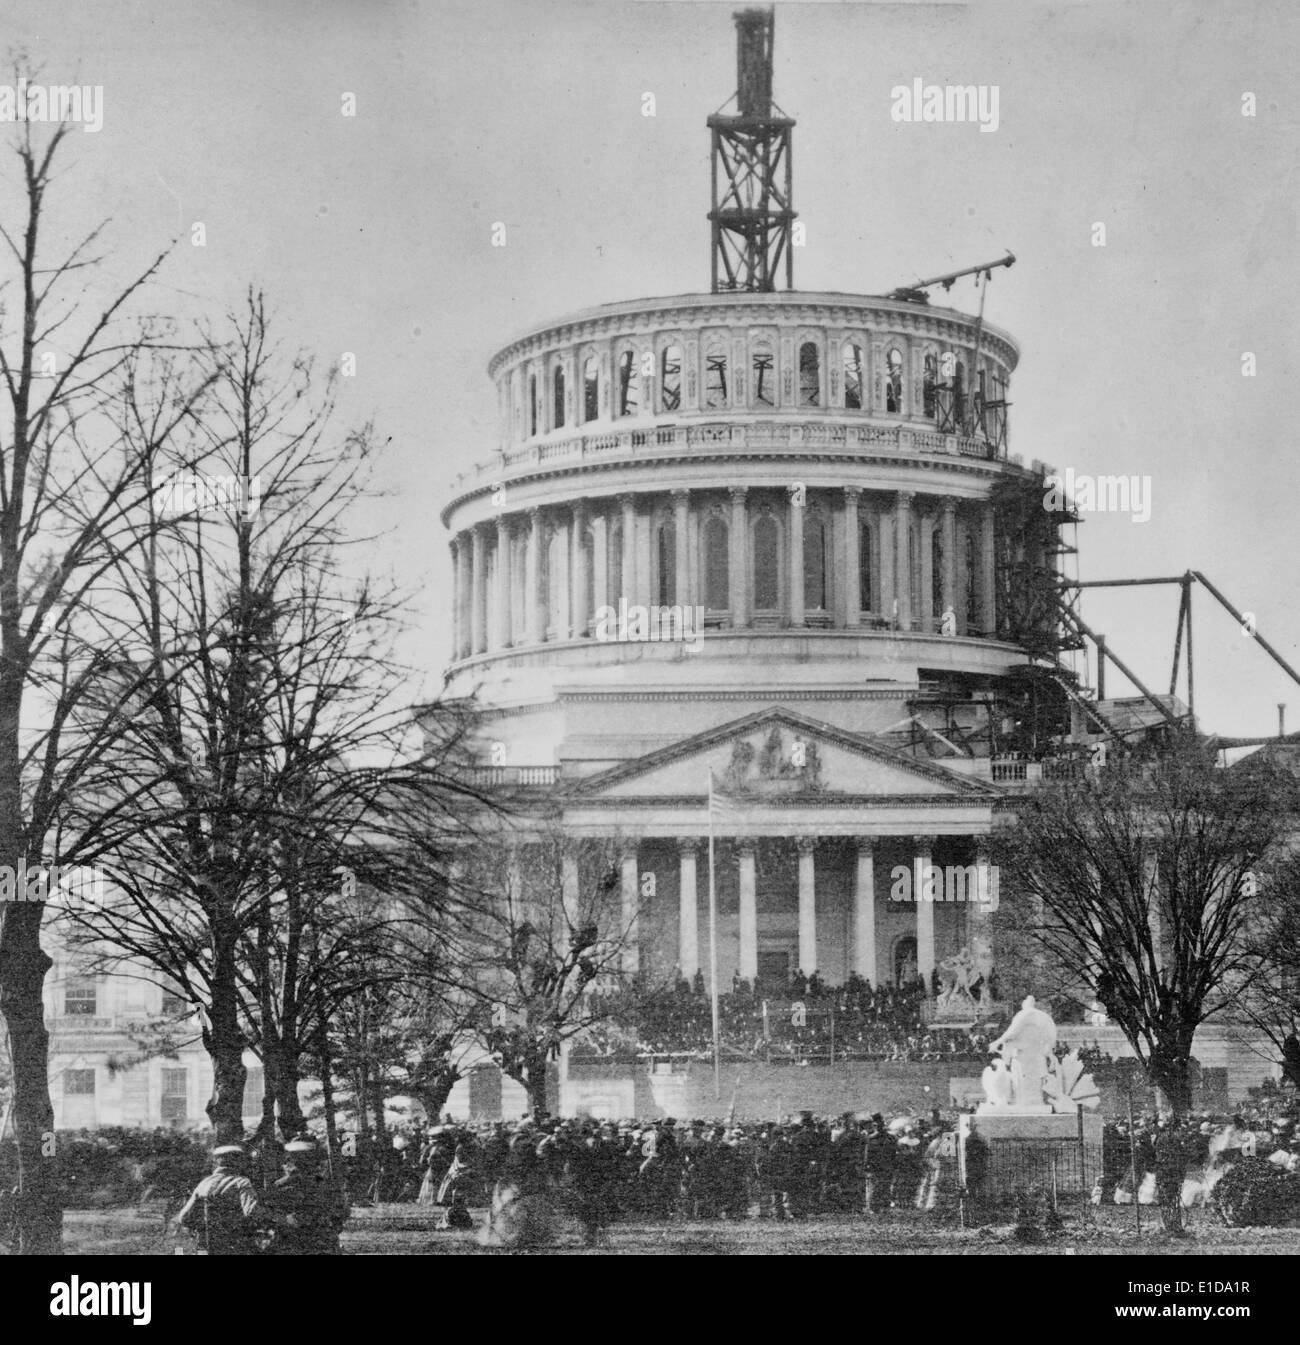 Inauguration d'Abraham Lincoln à la capitale américaine, 1861. Des foules de personnes regardant l'investiture d'Abraham Lincoln à l'avant de la capitale américaine, avec le dôme du Capitole en construction. Banque D'Images